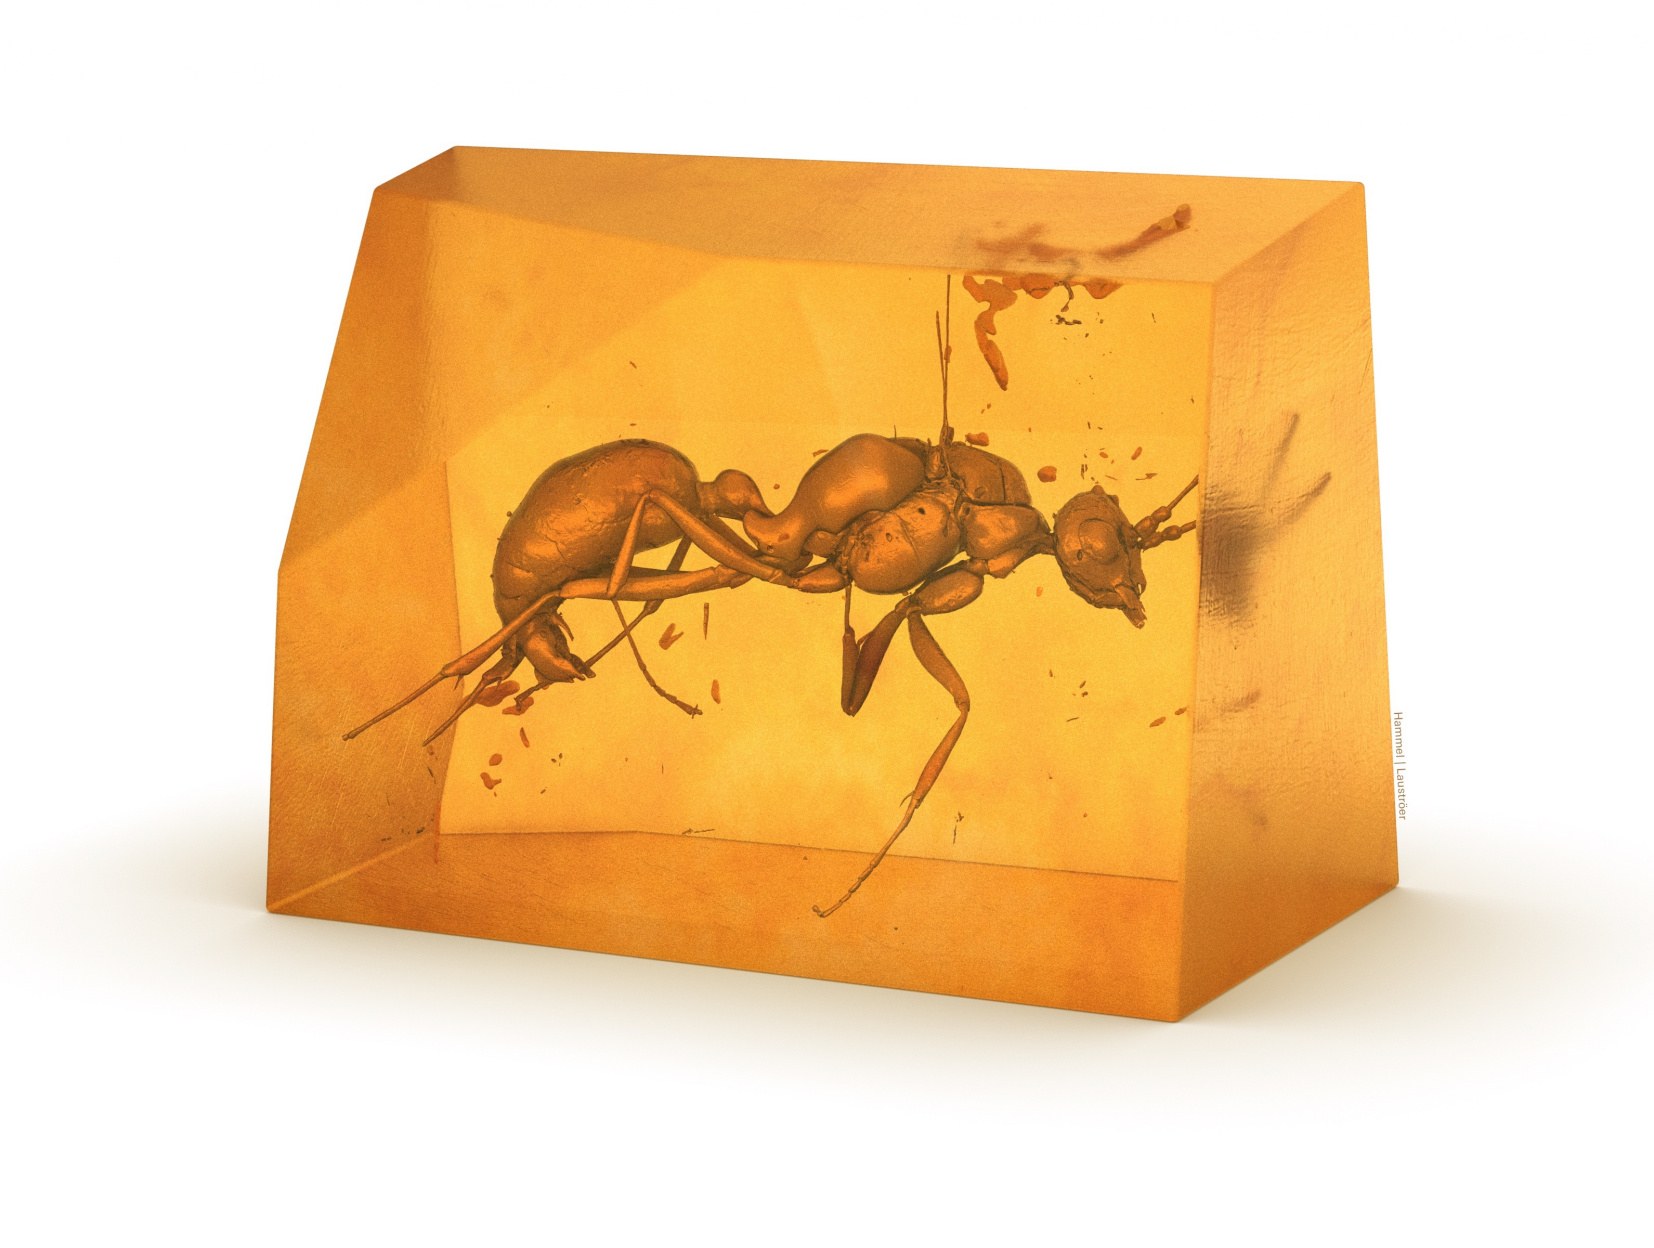 Тридимензионална слика на претходно непознатиот изумрен вид мравки.